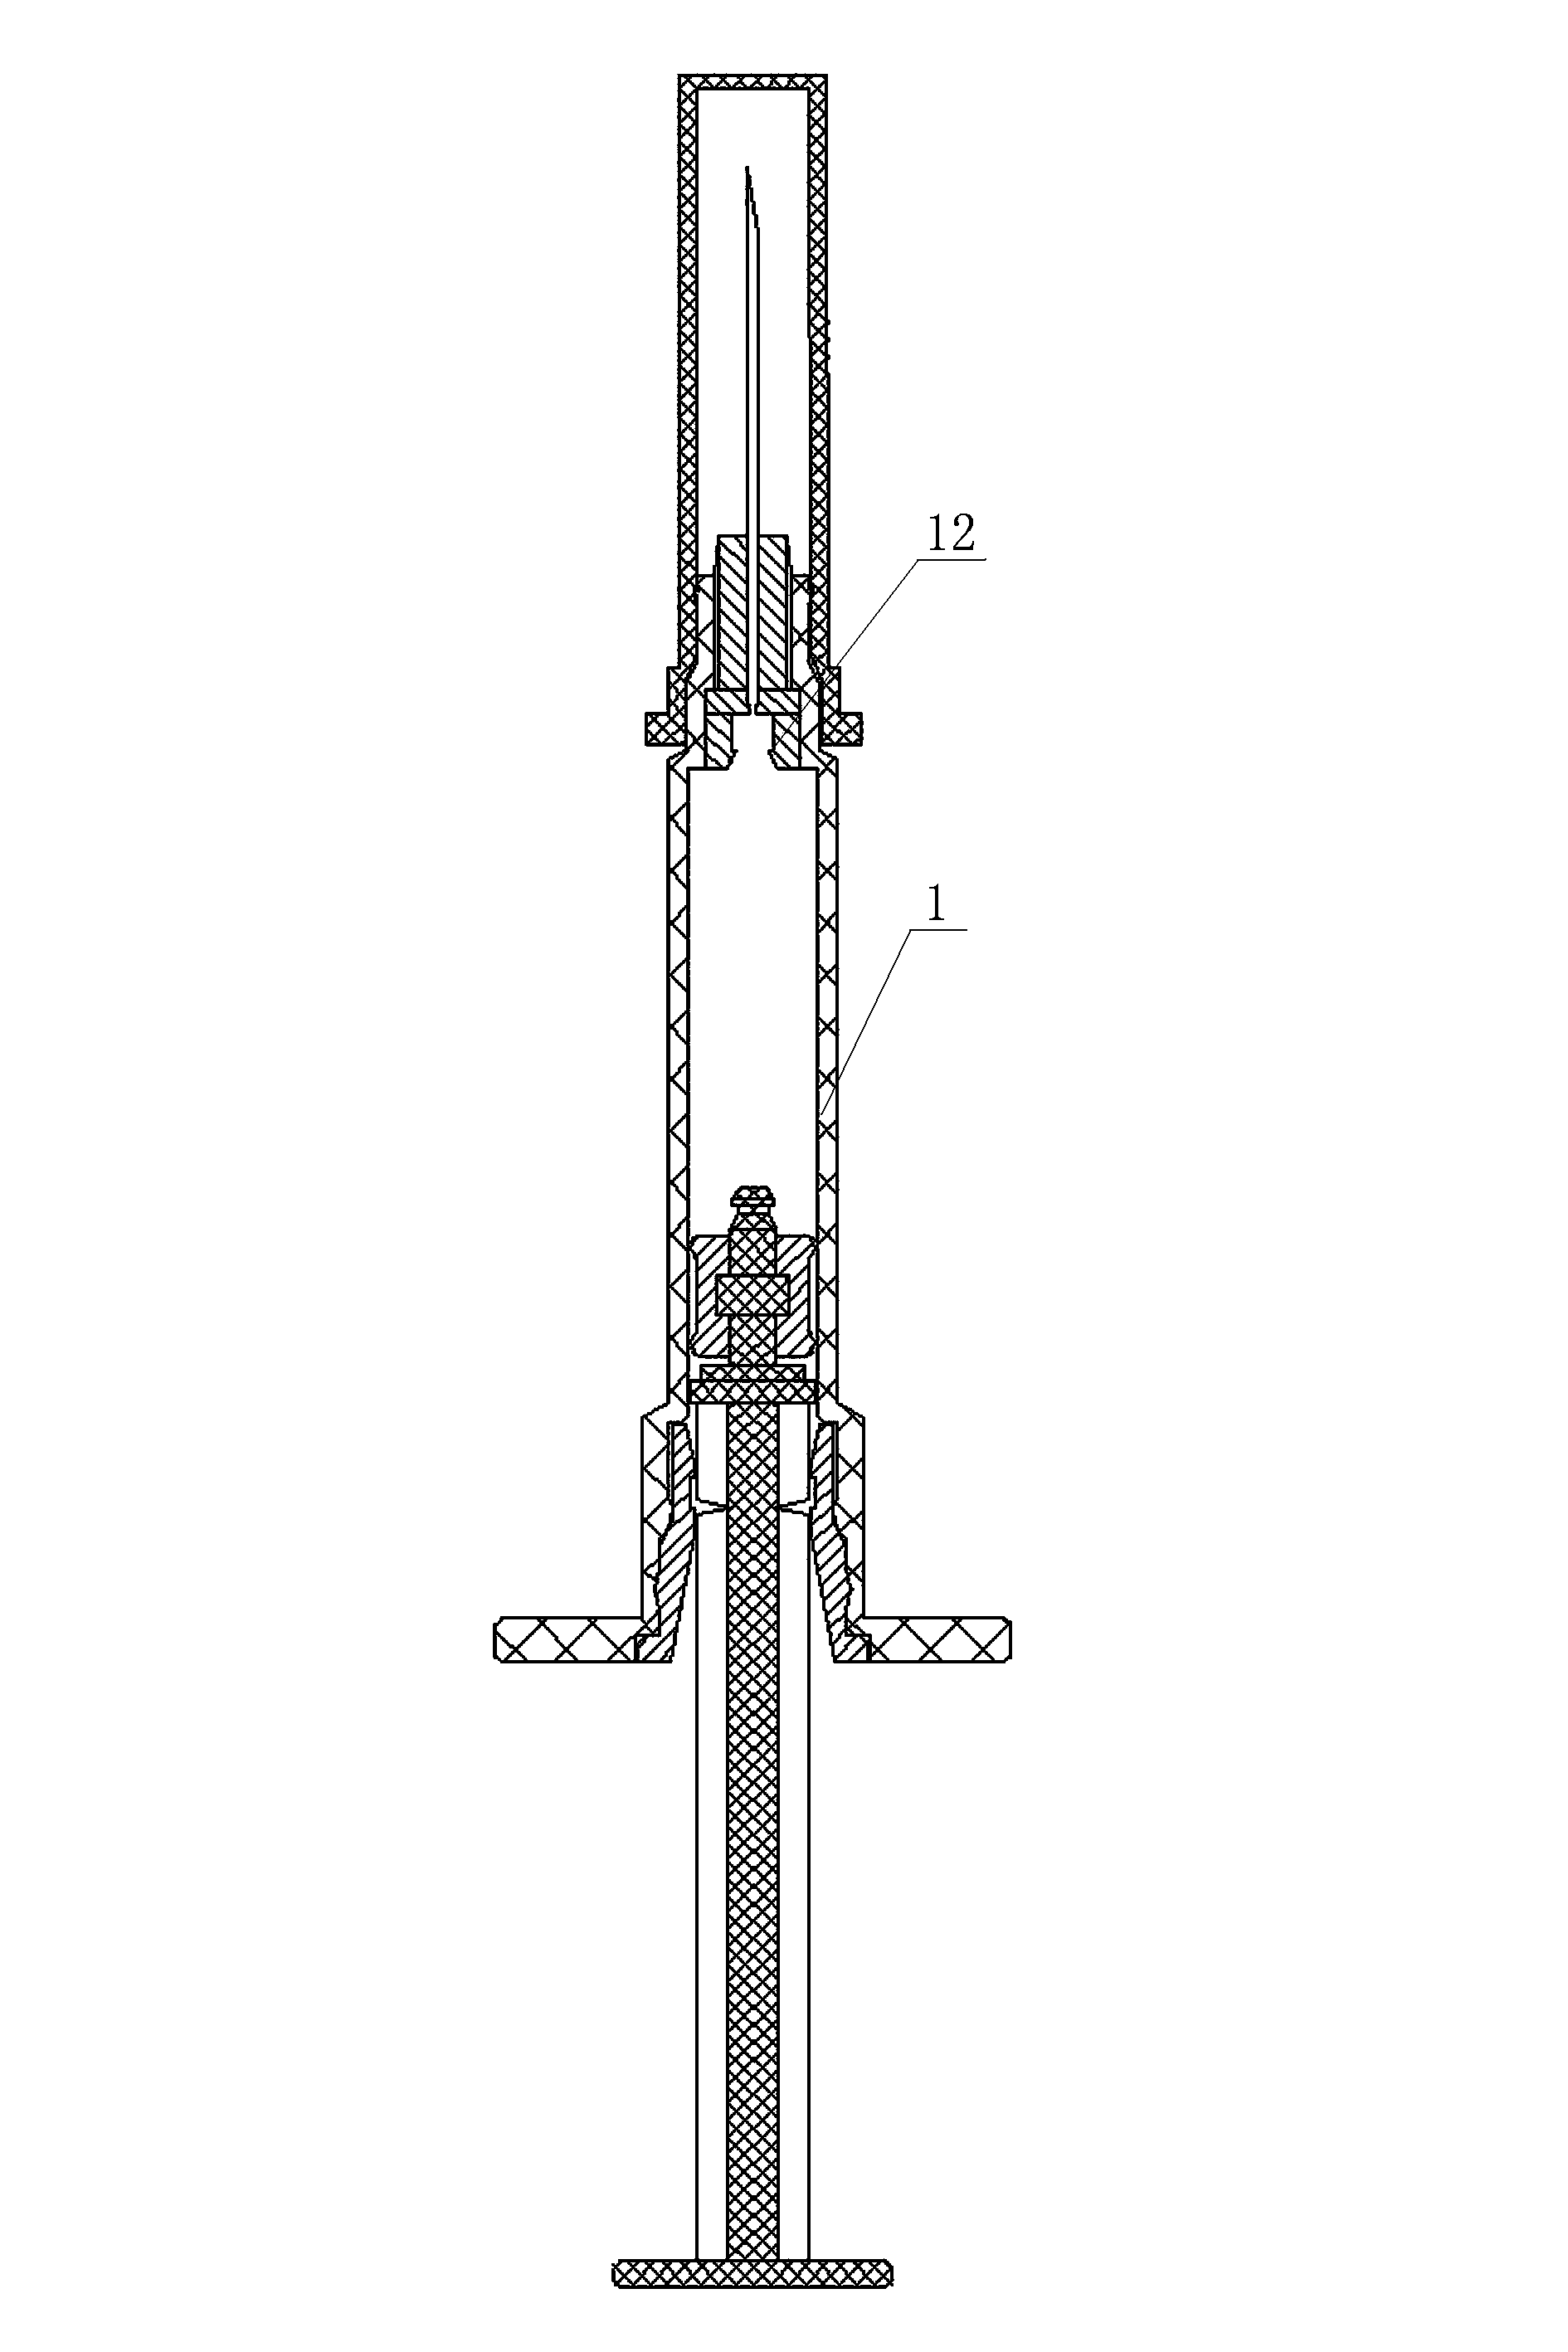 Core rod locking-type safety syringe